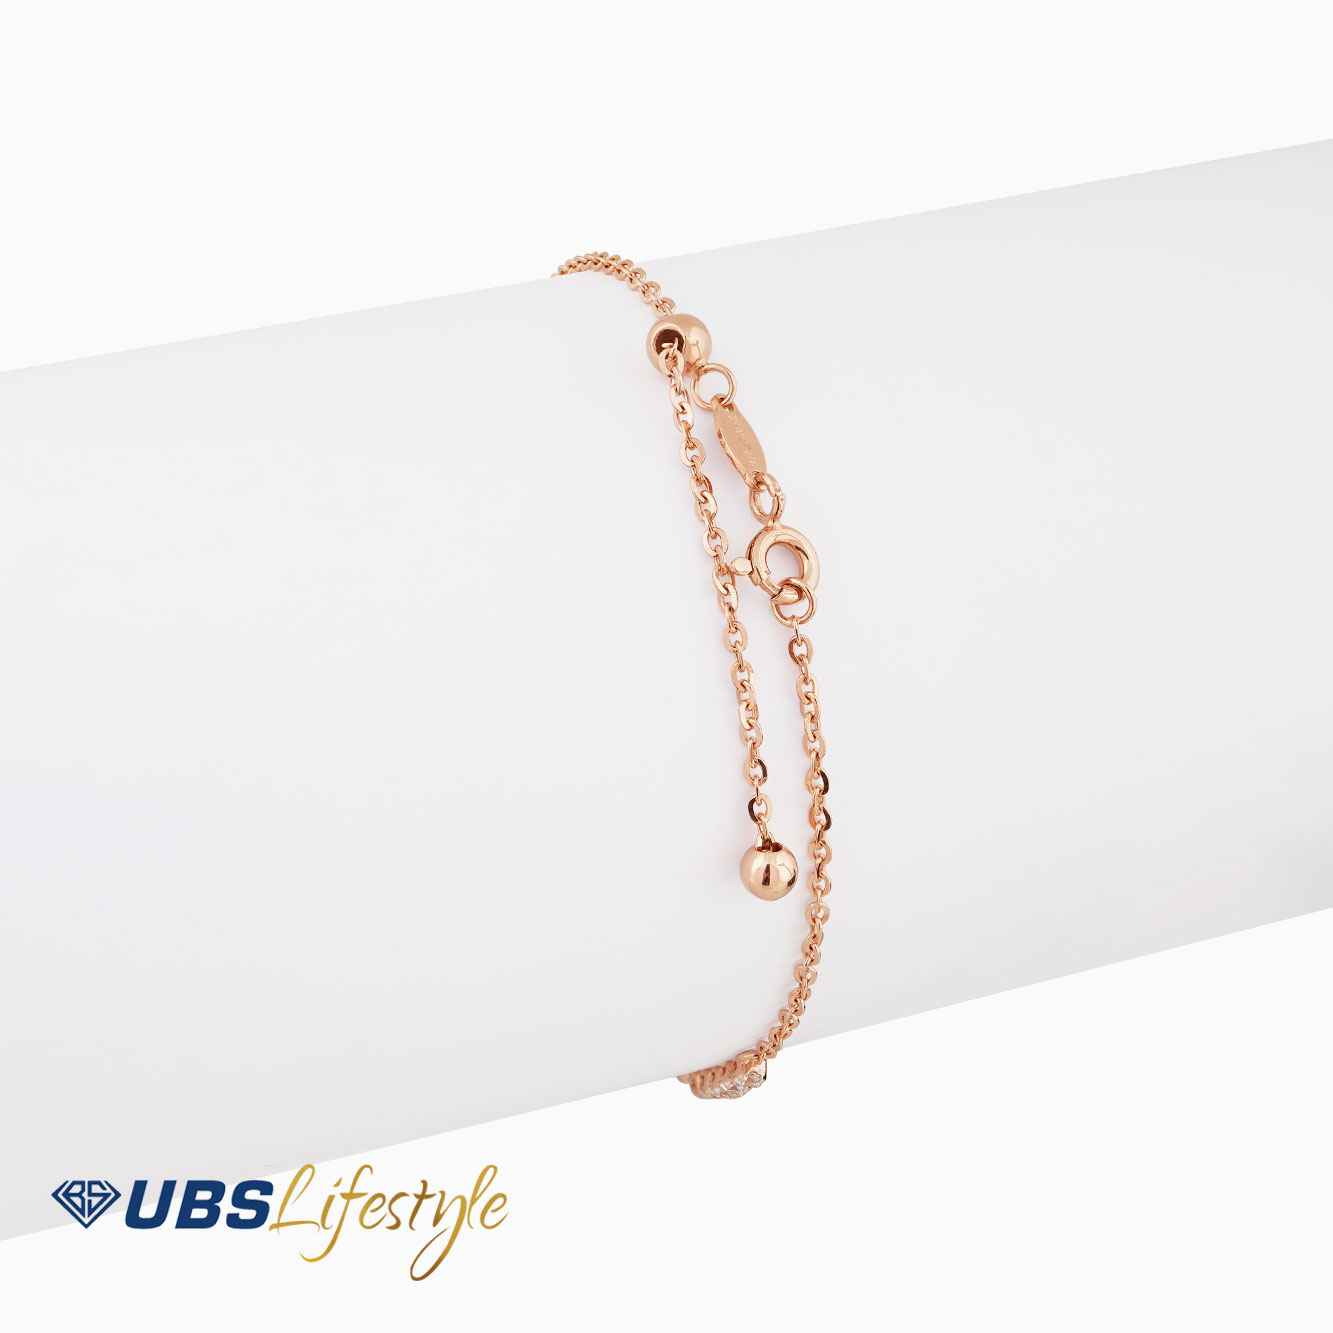 UBS Gelang Emas Rachel Rose - Kgv6366R - 17K